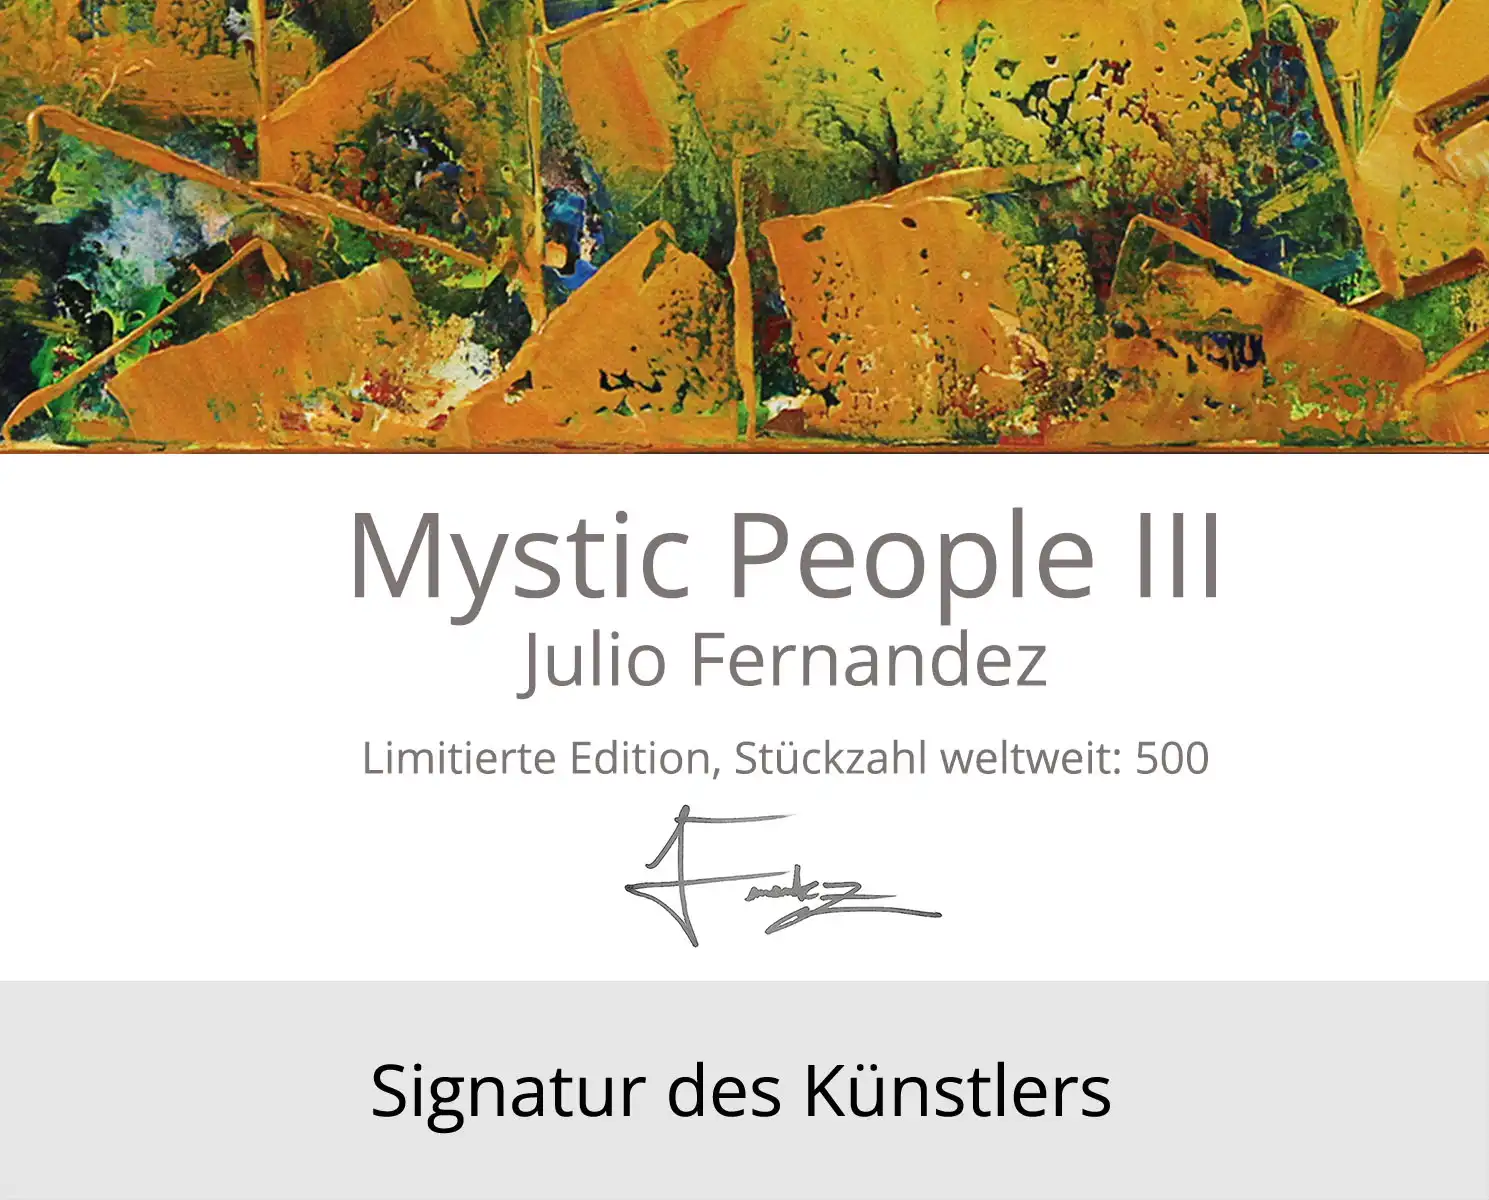 Limitierte Edition auf Papier, J. Fernandez "Mystic People III", Fineartprint, Kollektion E&K